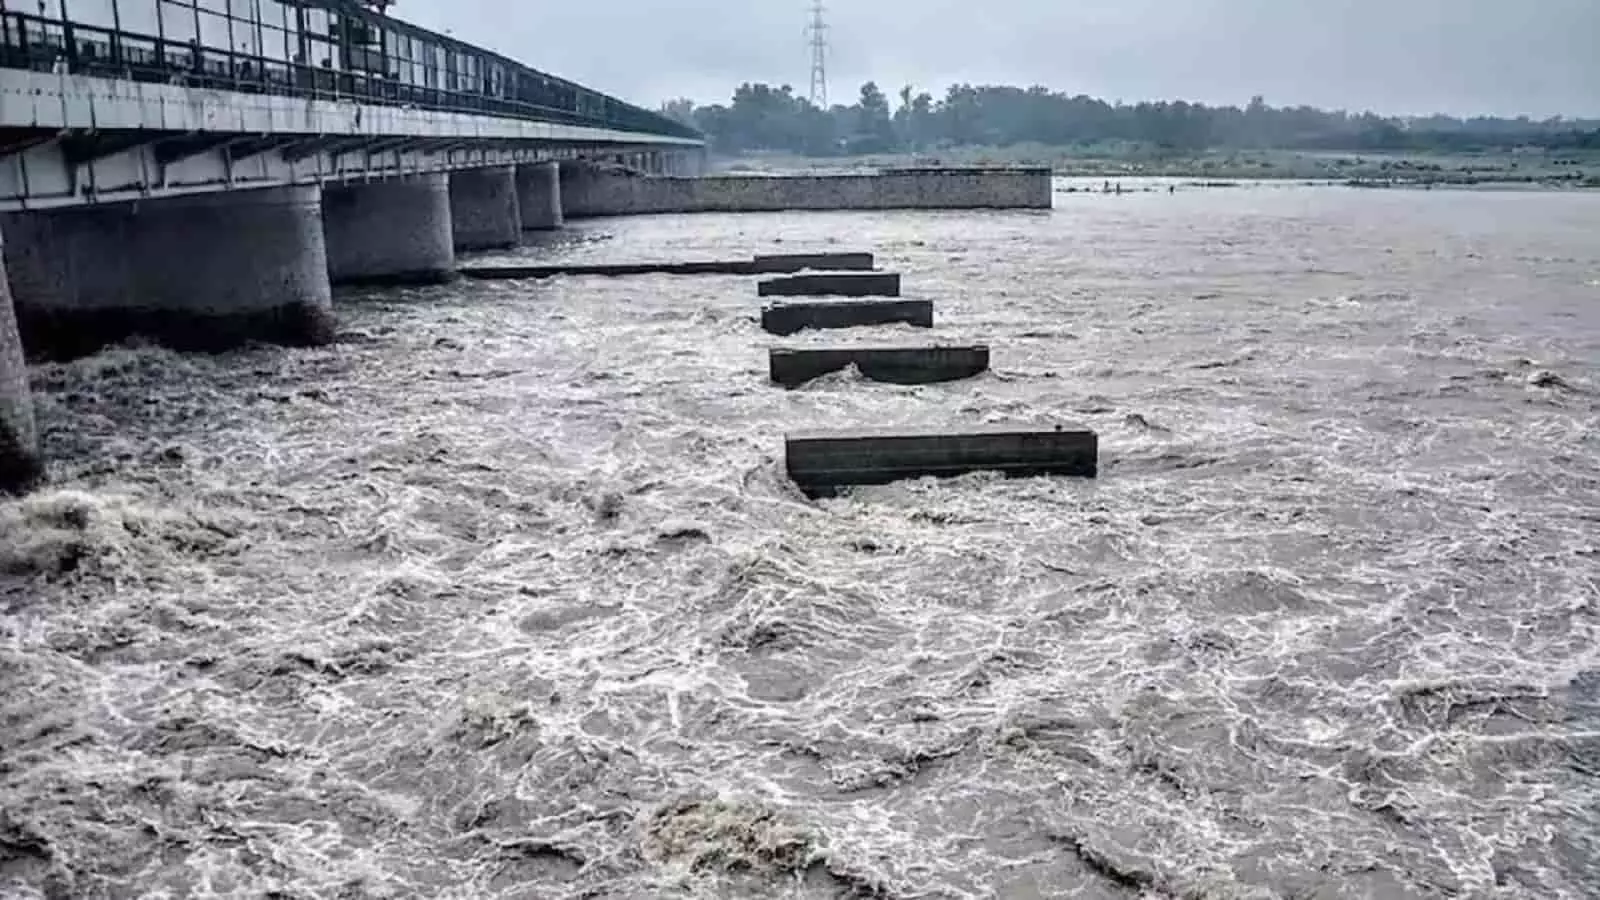 दिल्ली-NCR में फिर बाढ़ का खतरा! हथिनी कुंड बैराज से छोड़ा गया 2 लाख क्यूसेक पानी, HIGH ALERT जारी